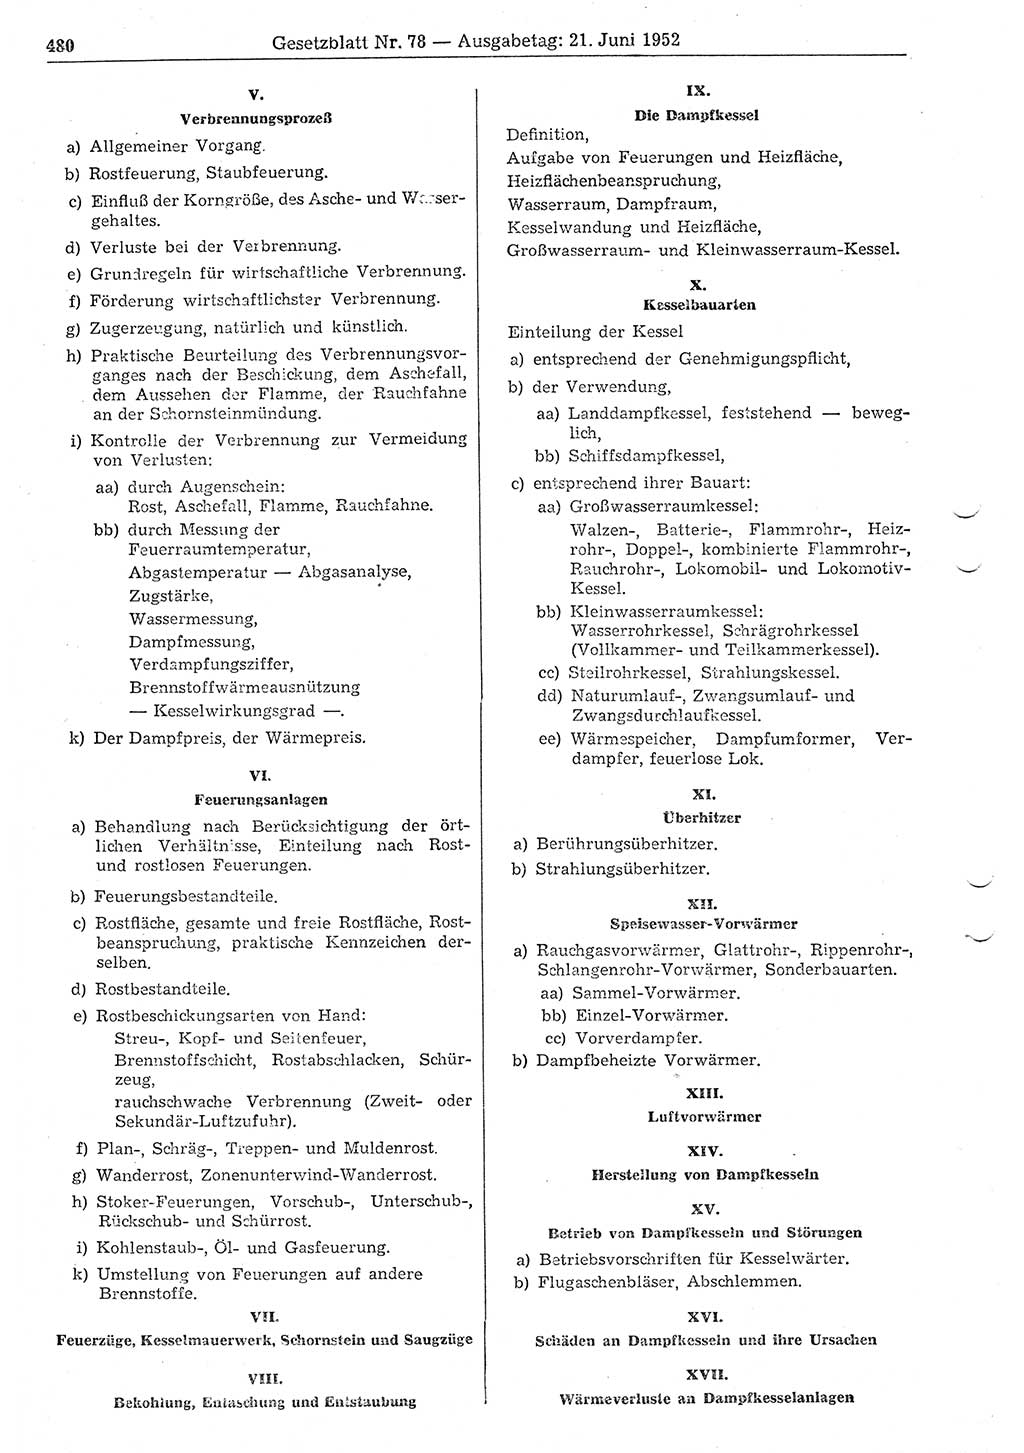 Gesetzblatt (GBl.) der Deutschen Demokratischen Republik (DDR) 1952, Seite 480 (GBl. DDR 1952, S. 480)